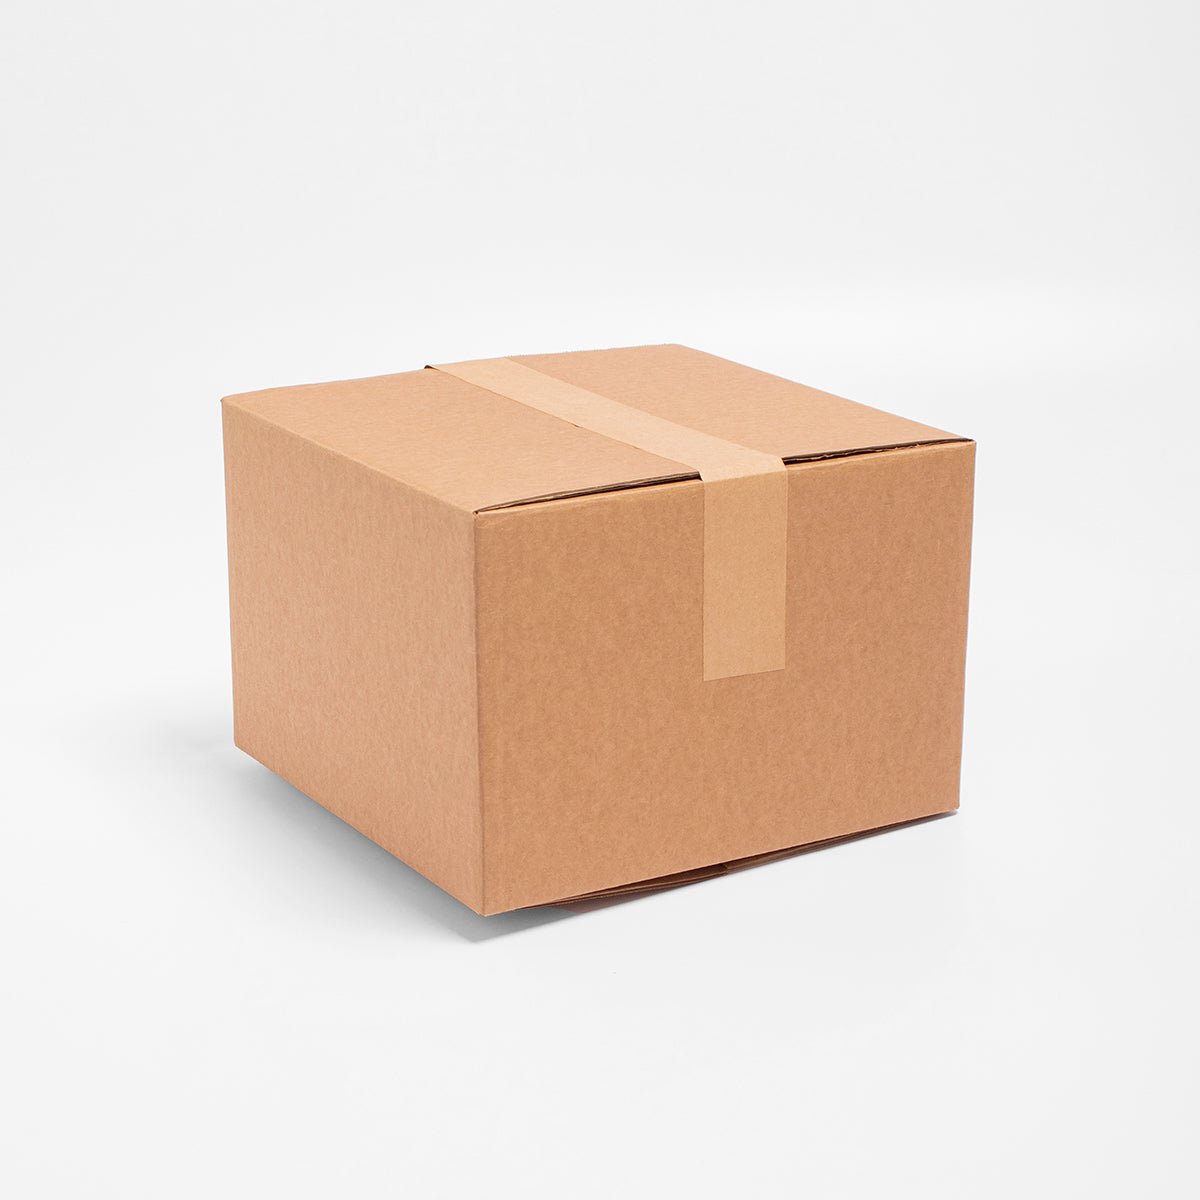 Caja de Cartón - 40 x 40 x 40 cm - Cuadrada - Skyboxes México